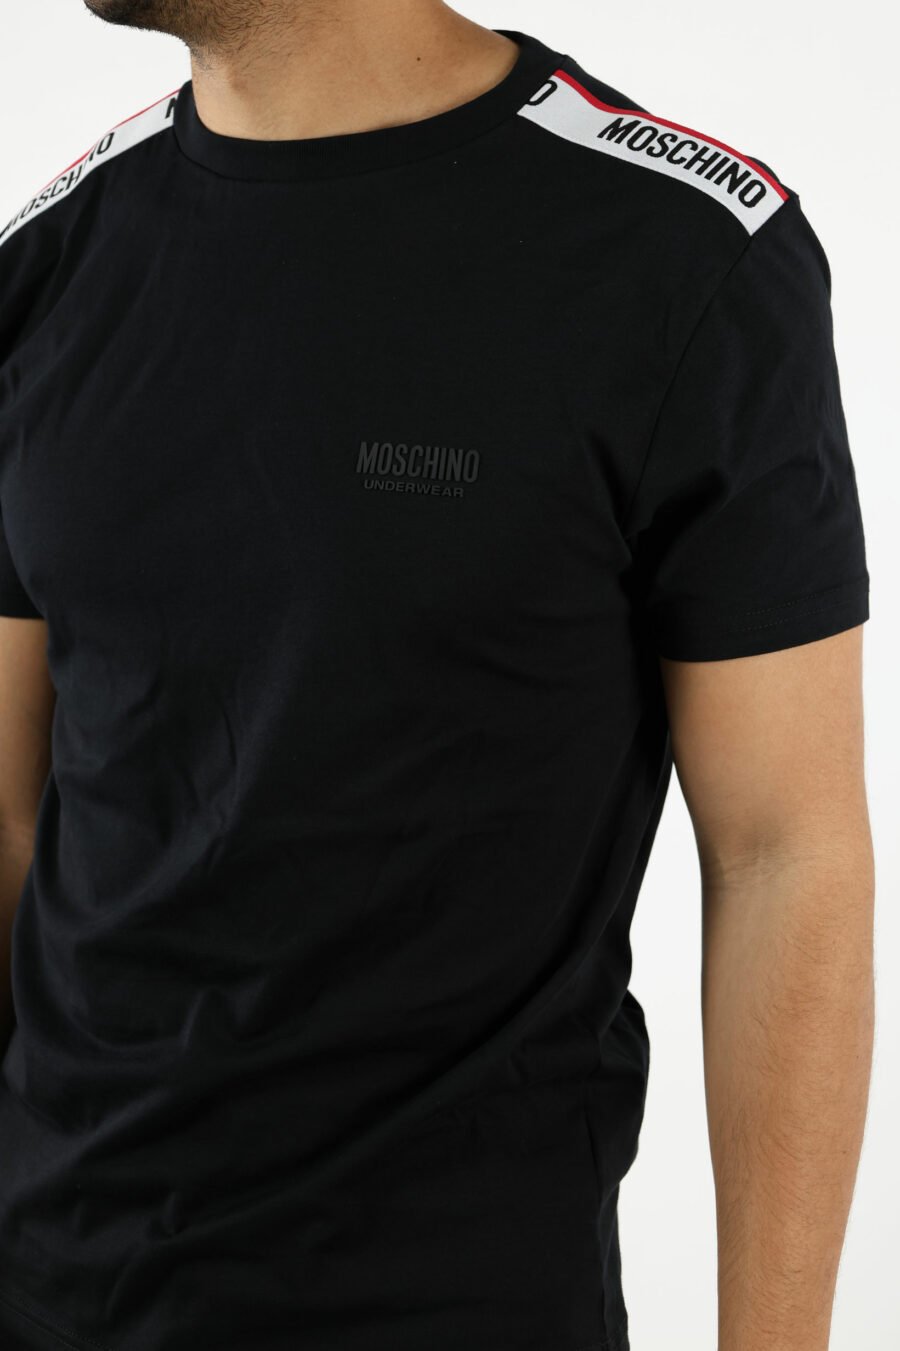 T-shirt noir avec logo blanc et ruban rouge sur les épaules - 110981